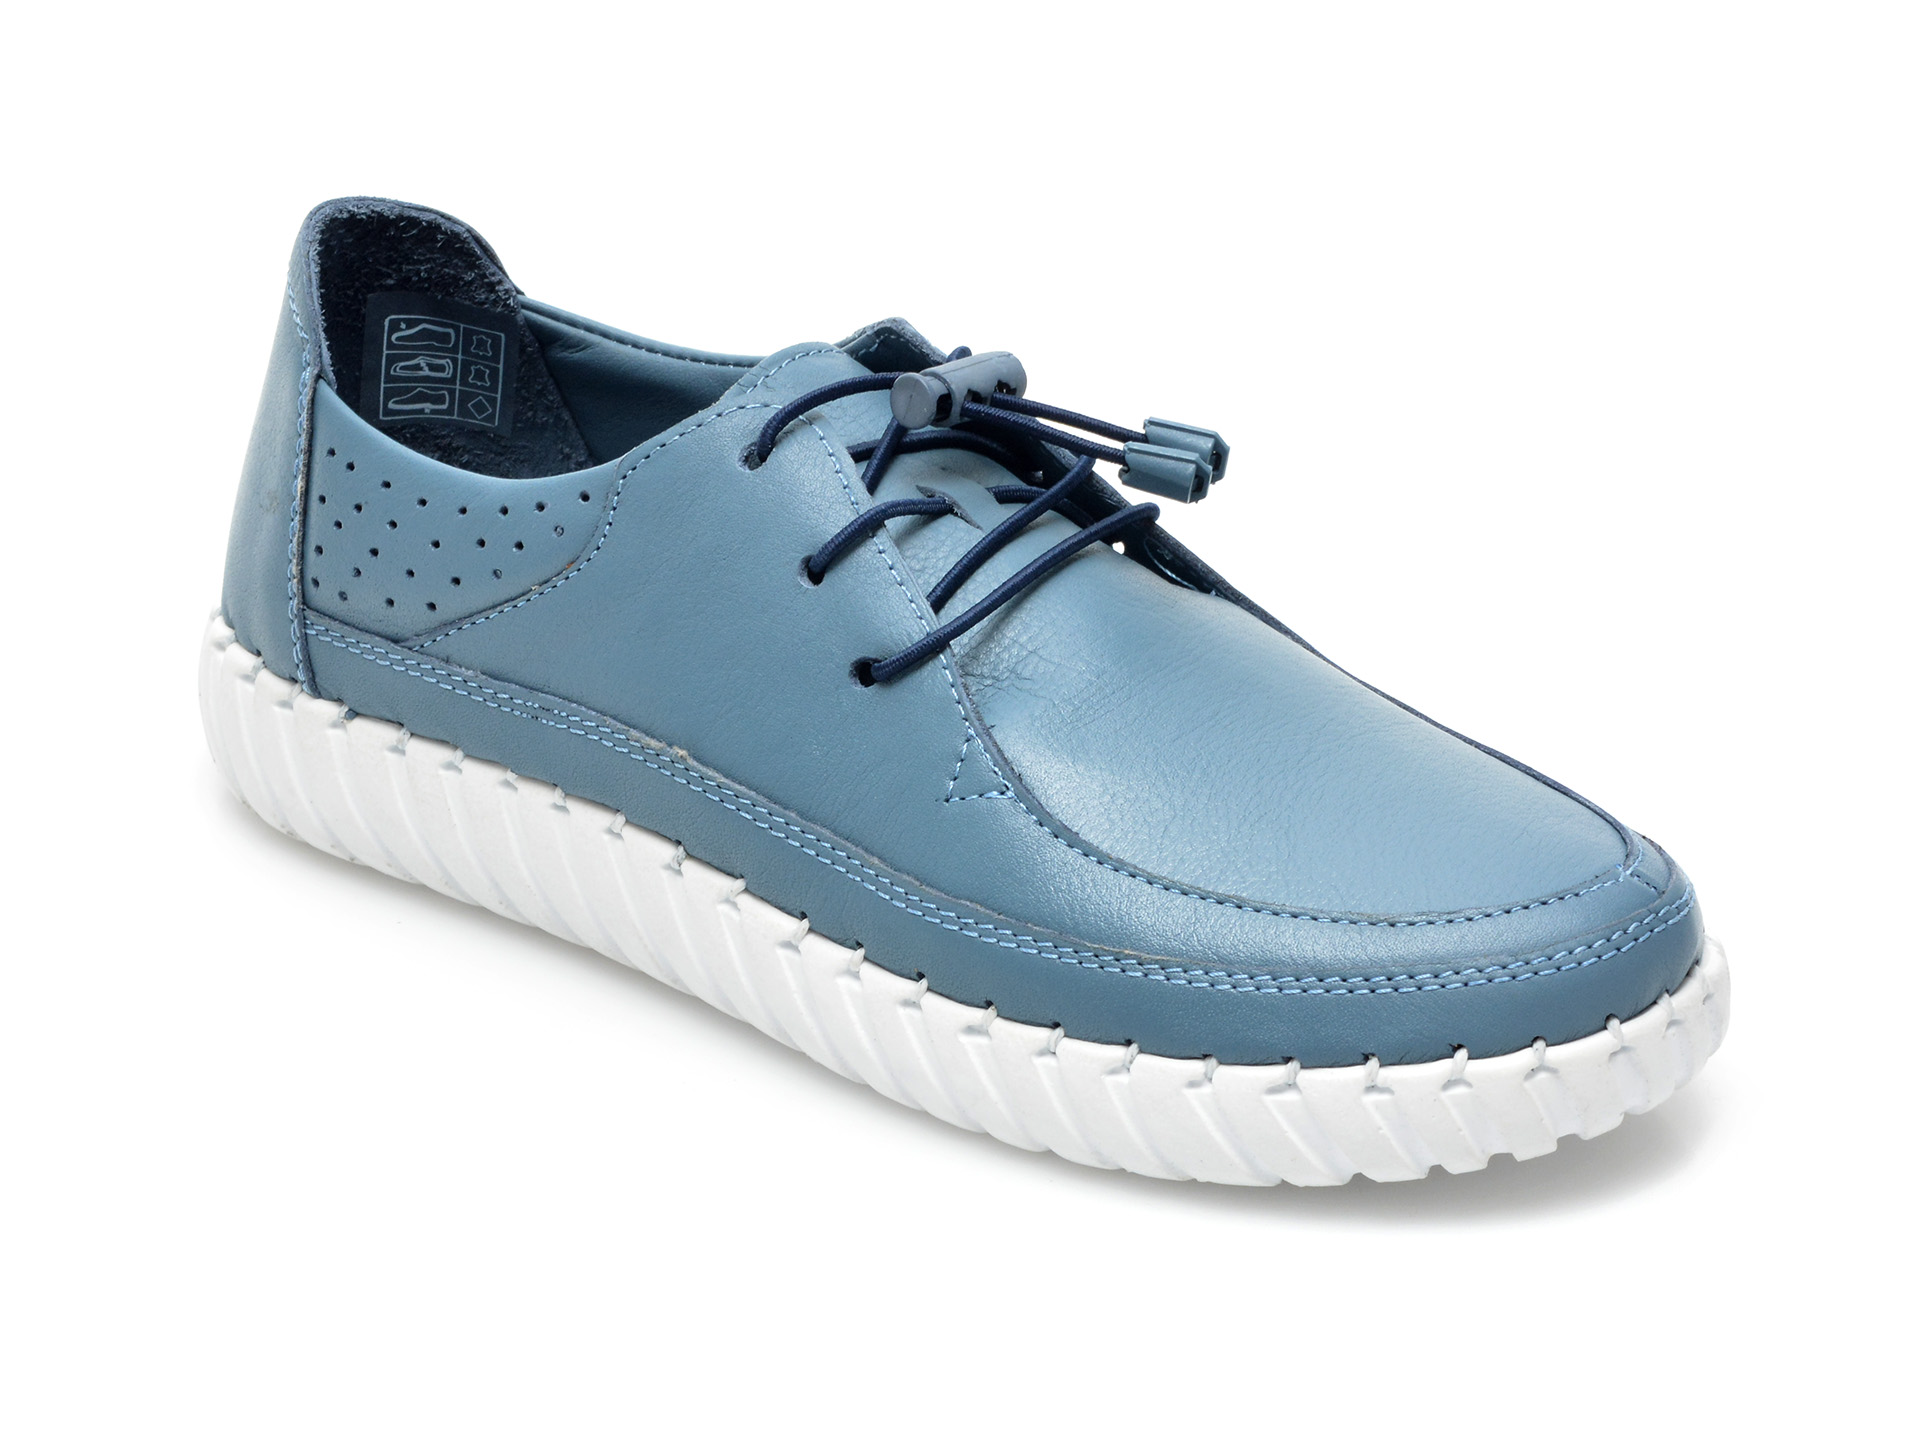 Pantofi FLAVIA PASSINI albastri, 110, din piele naturala Flavia Passini